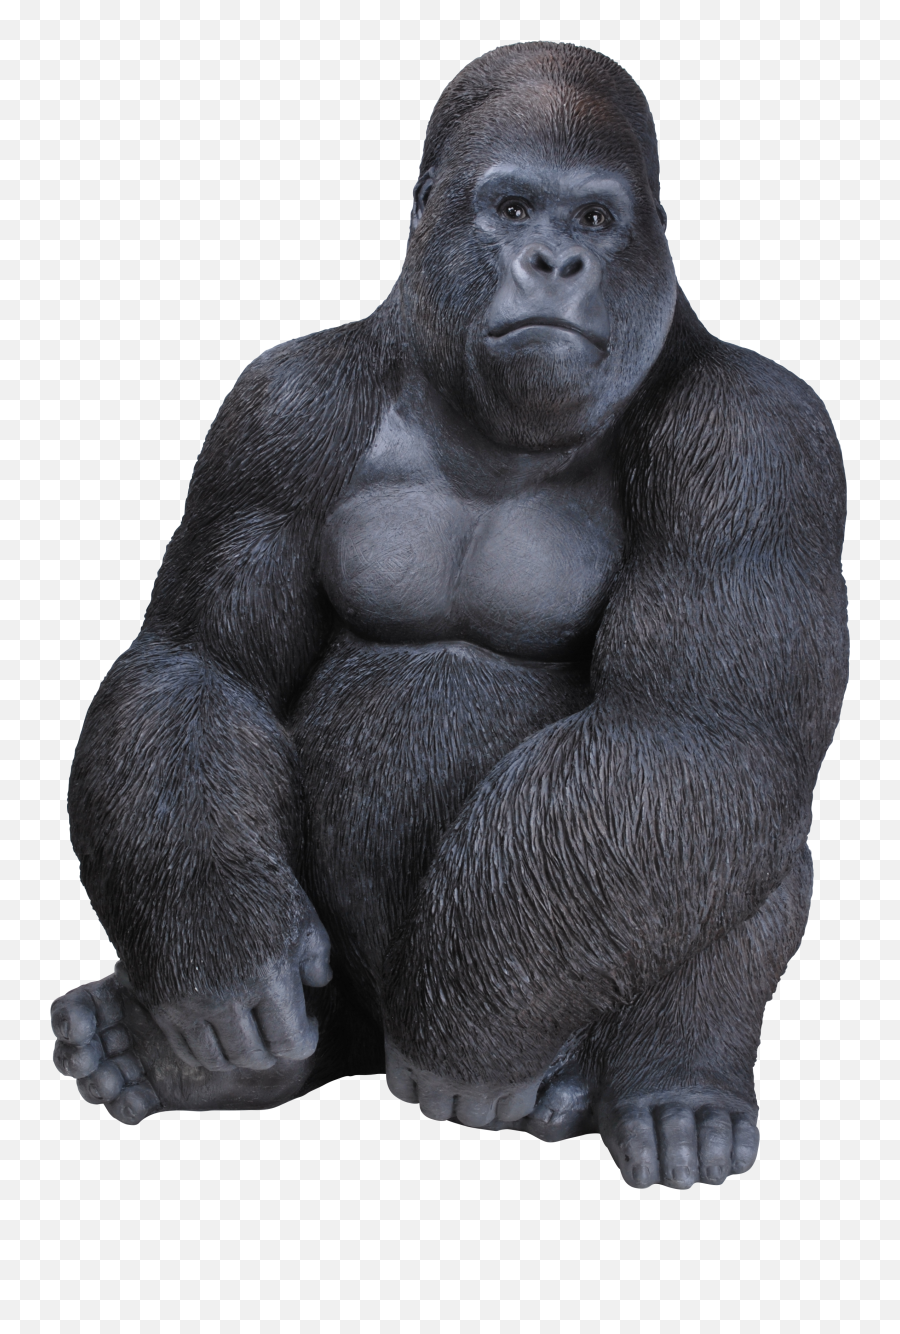 Download Rl Sitting Gorilla D - Gorilla Figurine Emoji,Gorilla Png